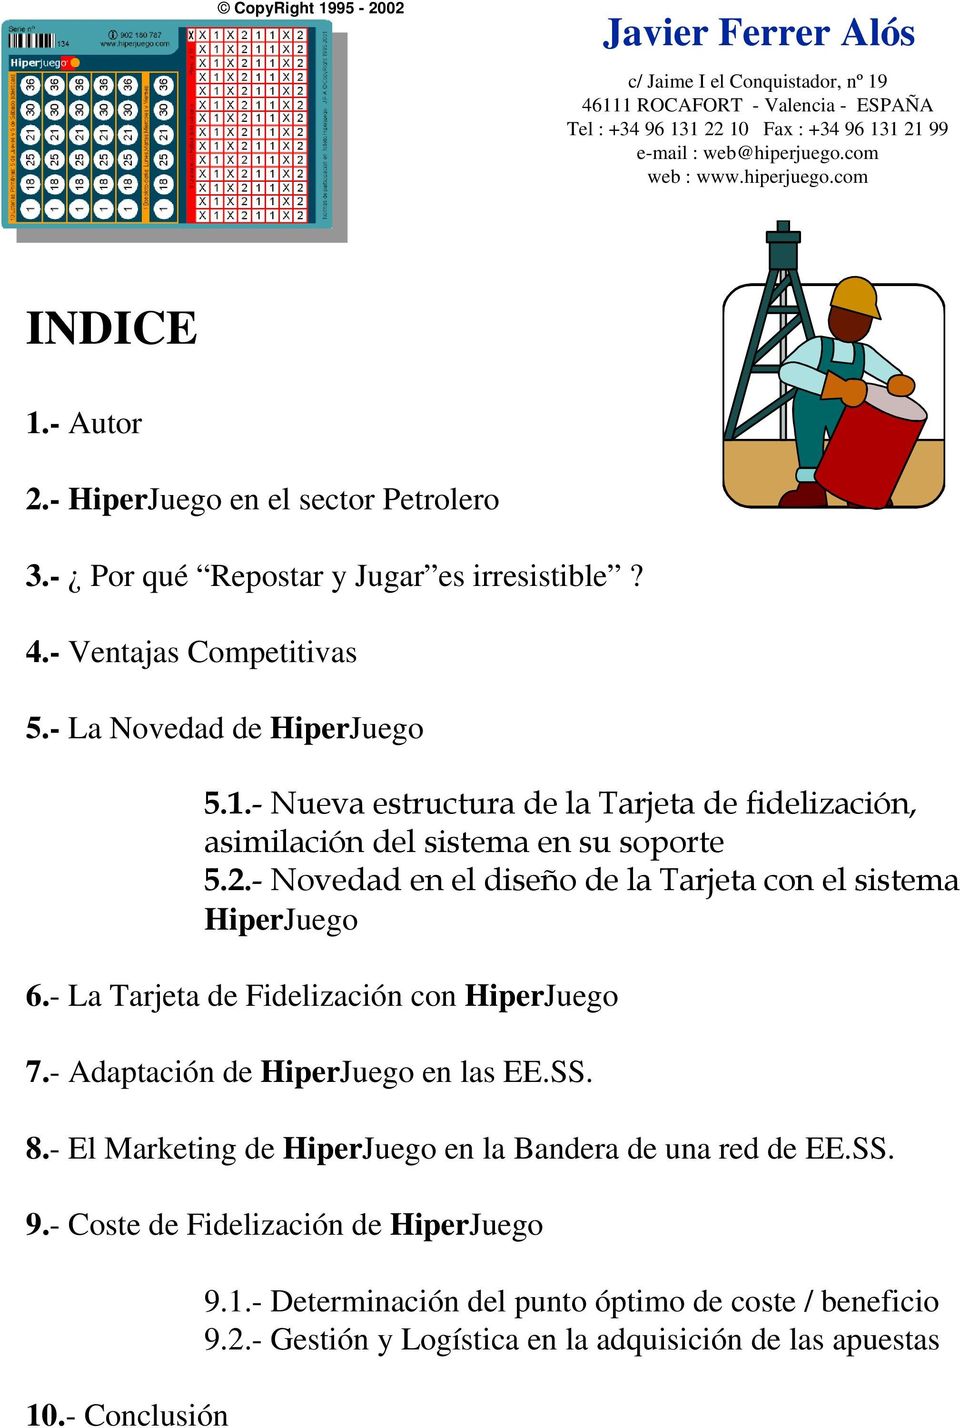 - El Marketing de HiperJuego en la Bandera de una red de EE.SS. 9.- Coste de Fidelización de HiperJuego 10